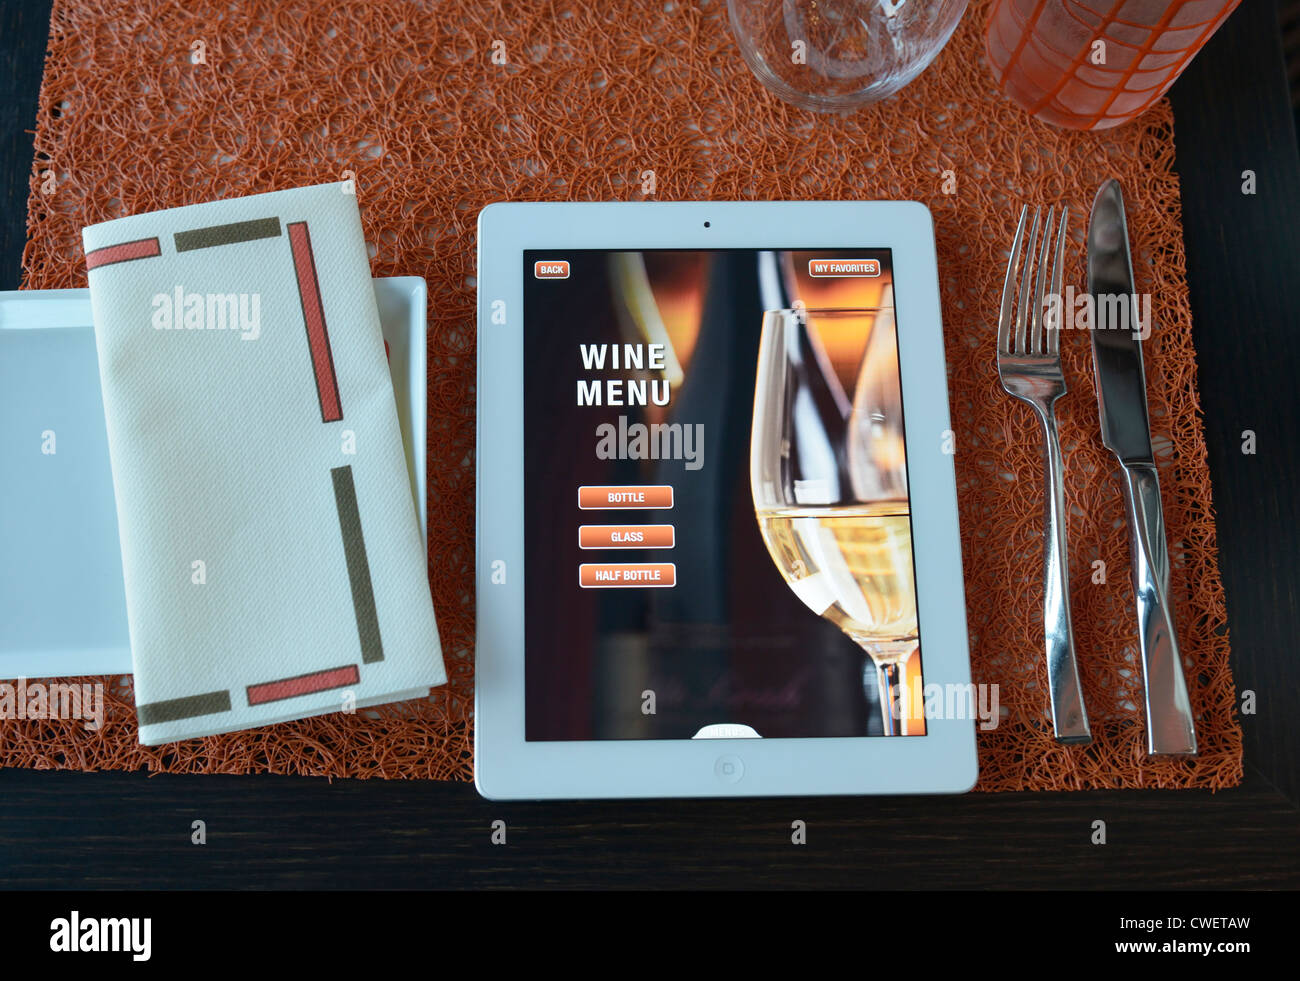 Il menù di un ristorante su ipad. La pagina selezionata è la pagina iniziale per il menu dei vini. Foto Stock